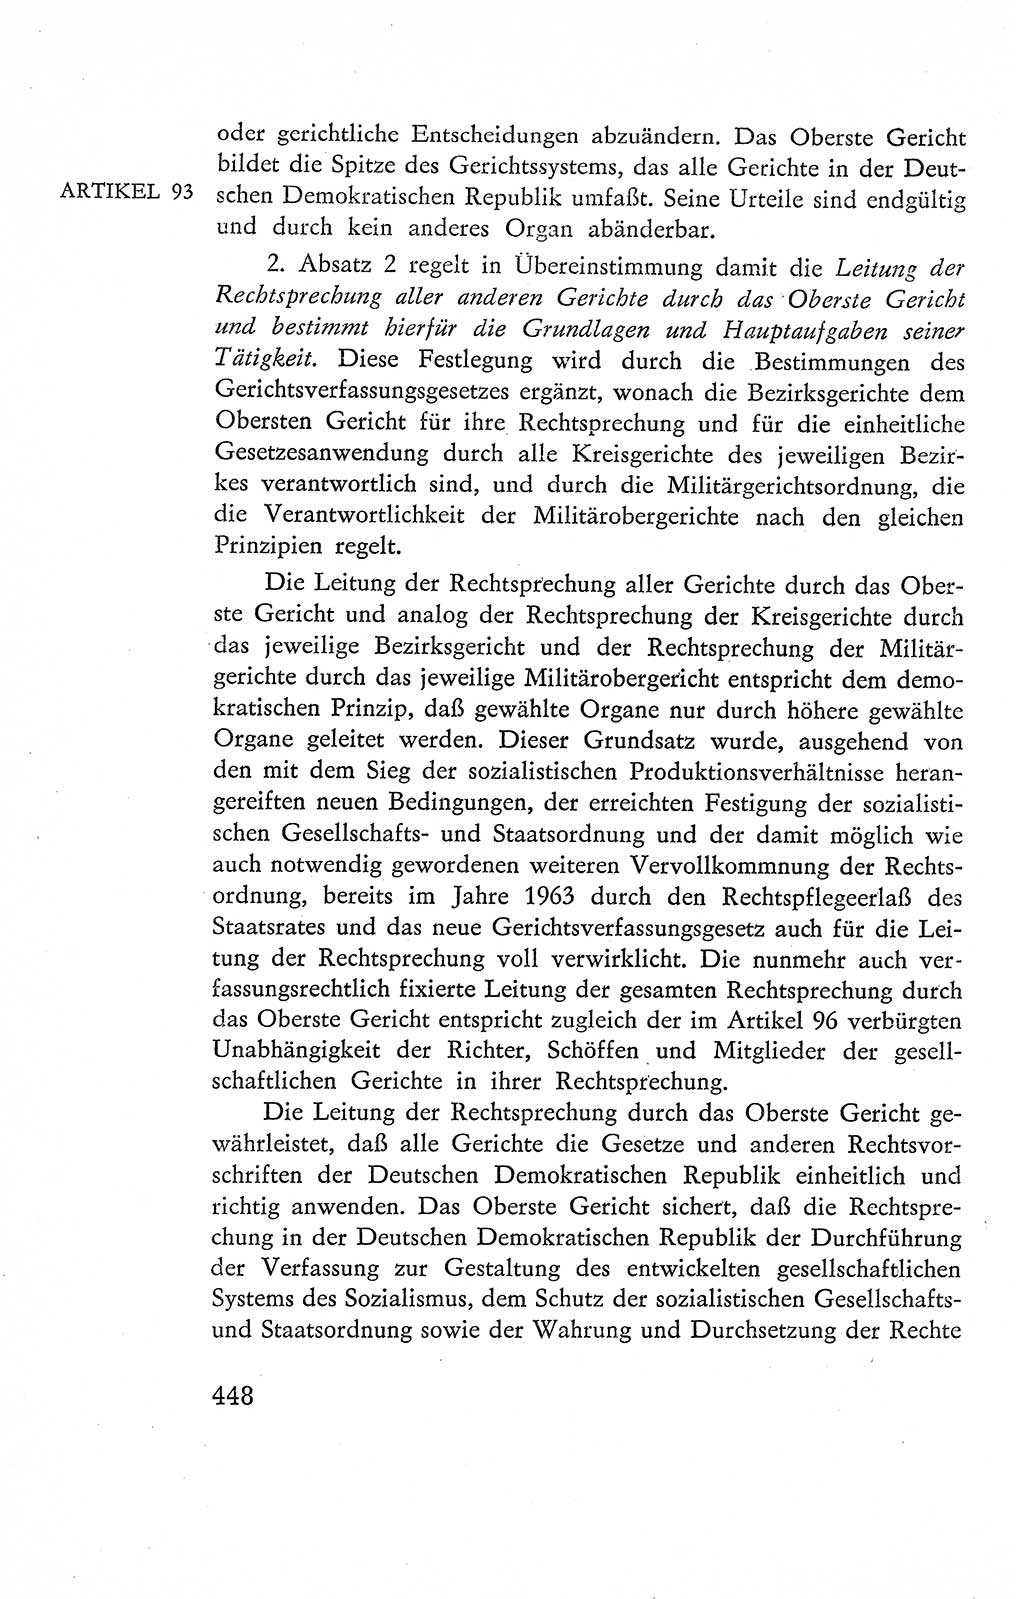 Verfassung der Deutschen Demokratischen Republik (DDR), Dokumente, Kommentar 1969, Band 2, Seite 448 (Verf. DDR Dok. Komm. 1969, Bd. 2, S. 448)